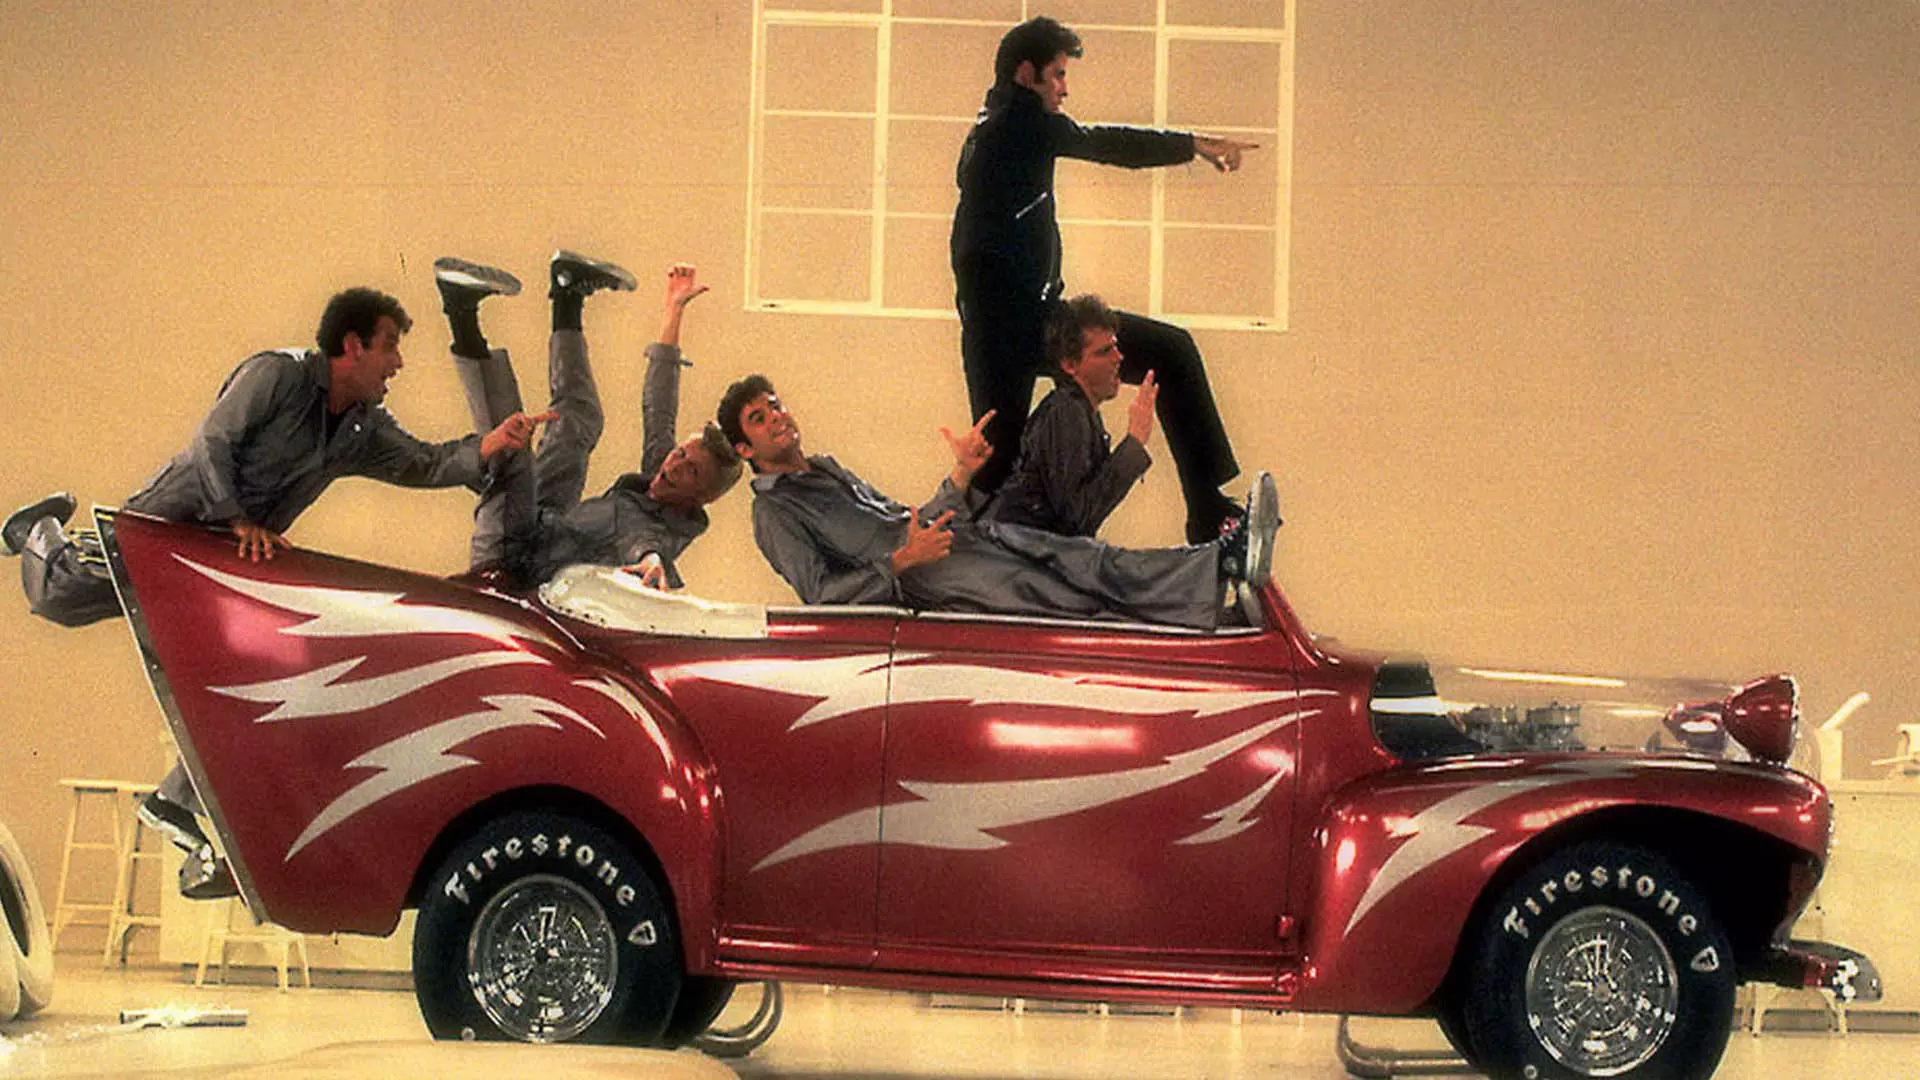 جان تراولتا و سایر بازیگران فیلم Grease روی یک ماشین